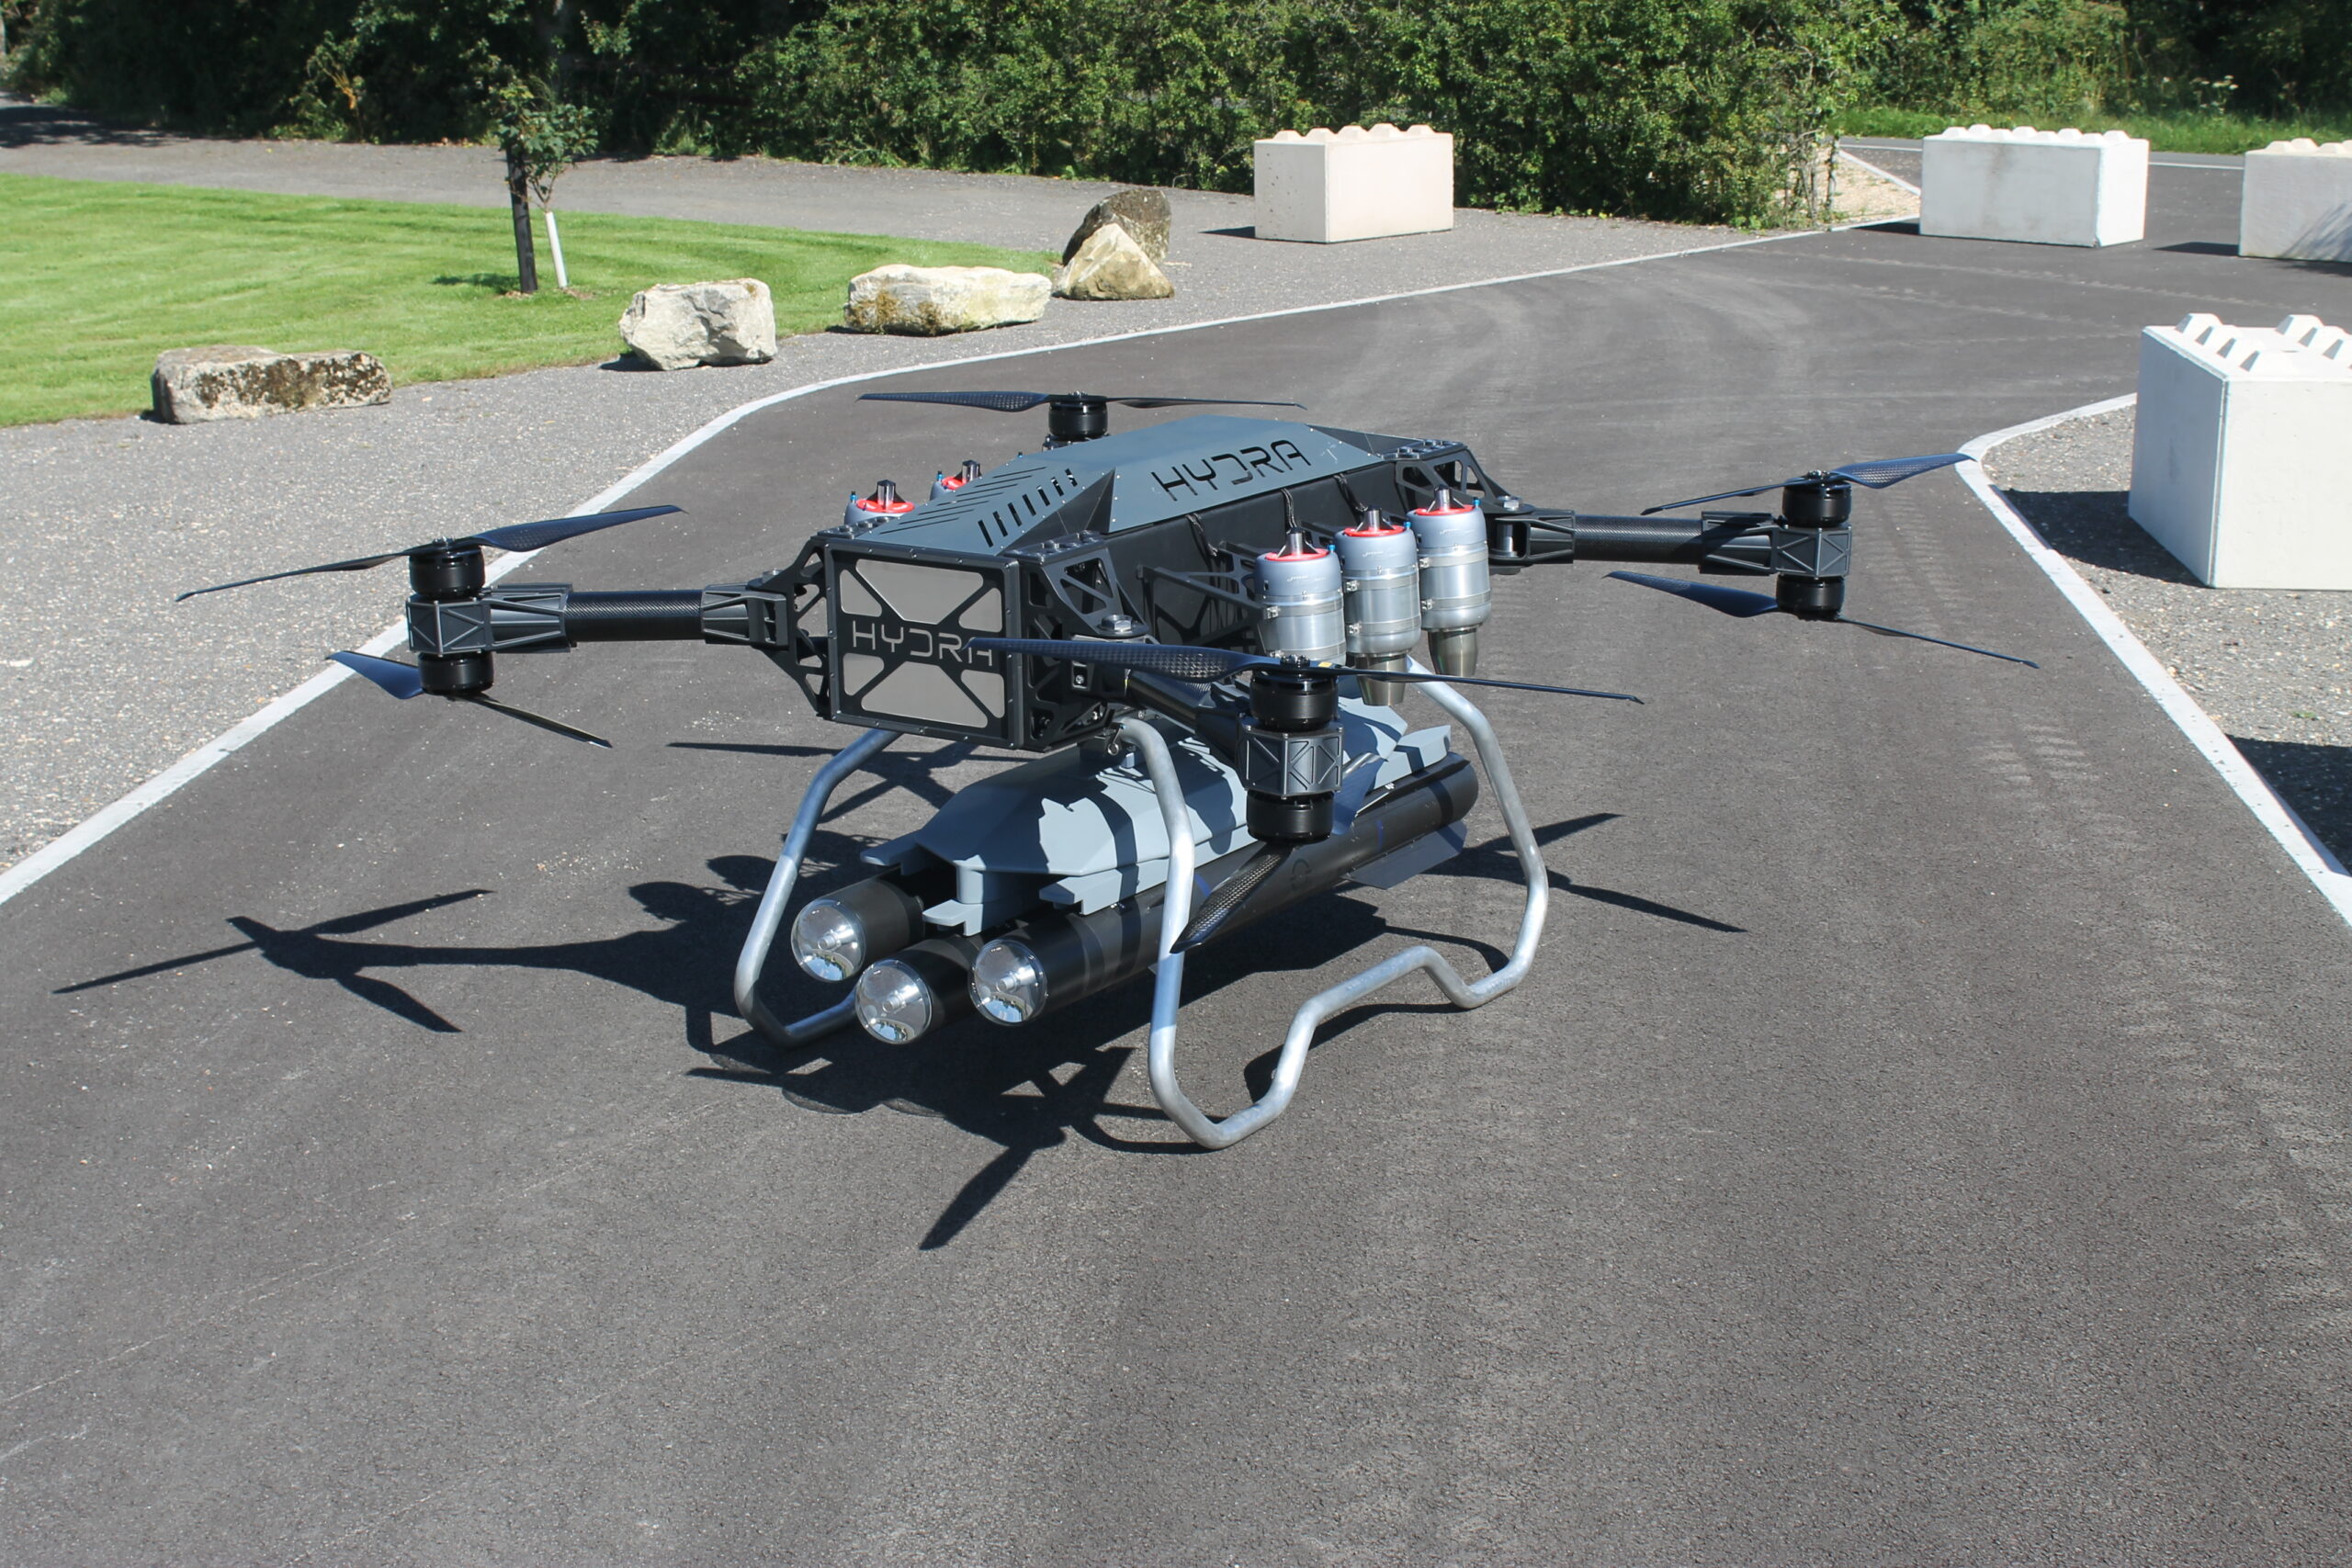 Hydra 400 drone